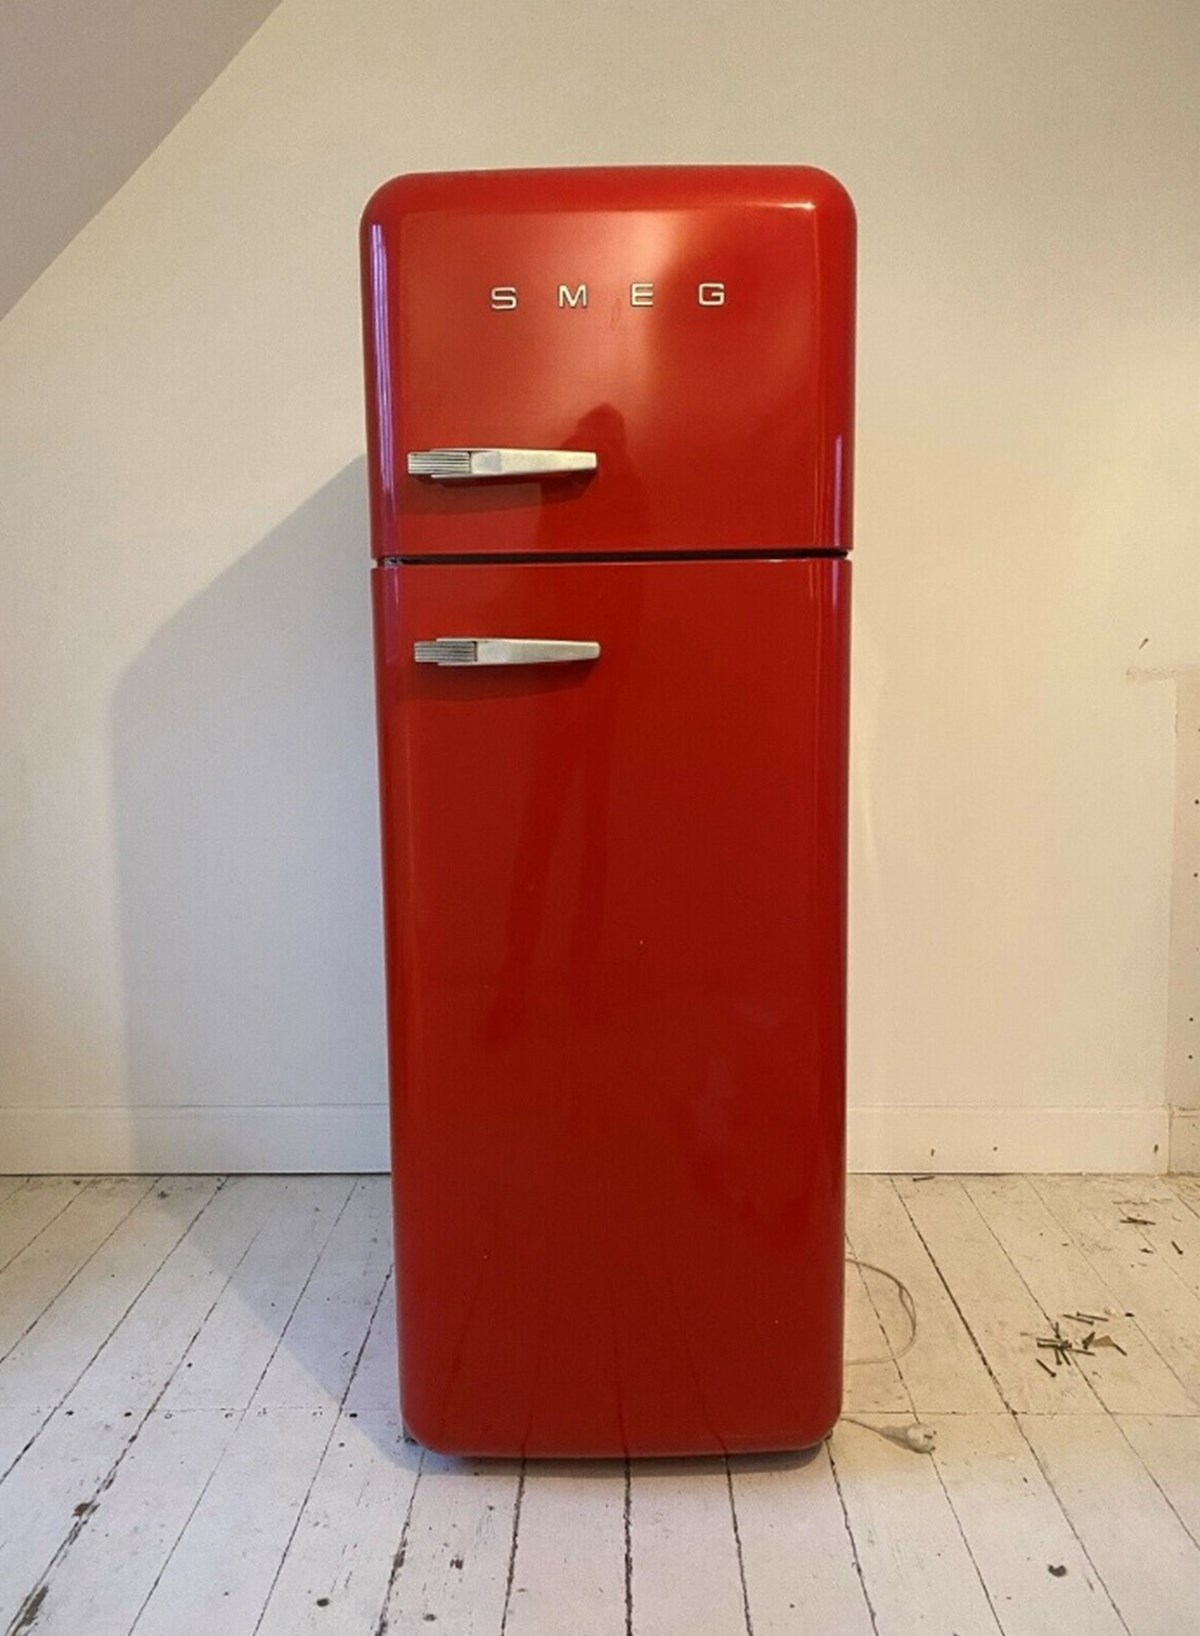 Vil du have smæk for skillingen, så køb et Smeg-køleskab på DBA. I skrivende stund er der 26 til salg på DBA, og dette røde kan blive dit for 2.500 kroner, hvis du tager til Nørrebro i København for at hente det. Her har Magnus-Matias nemlig til huse, og det er ham, der sælger køleskabet